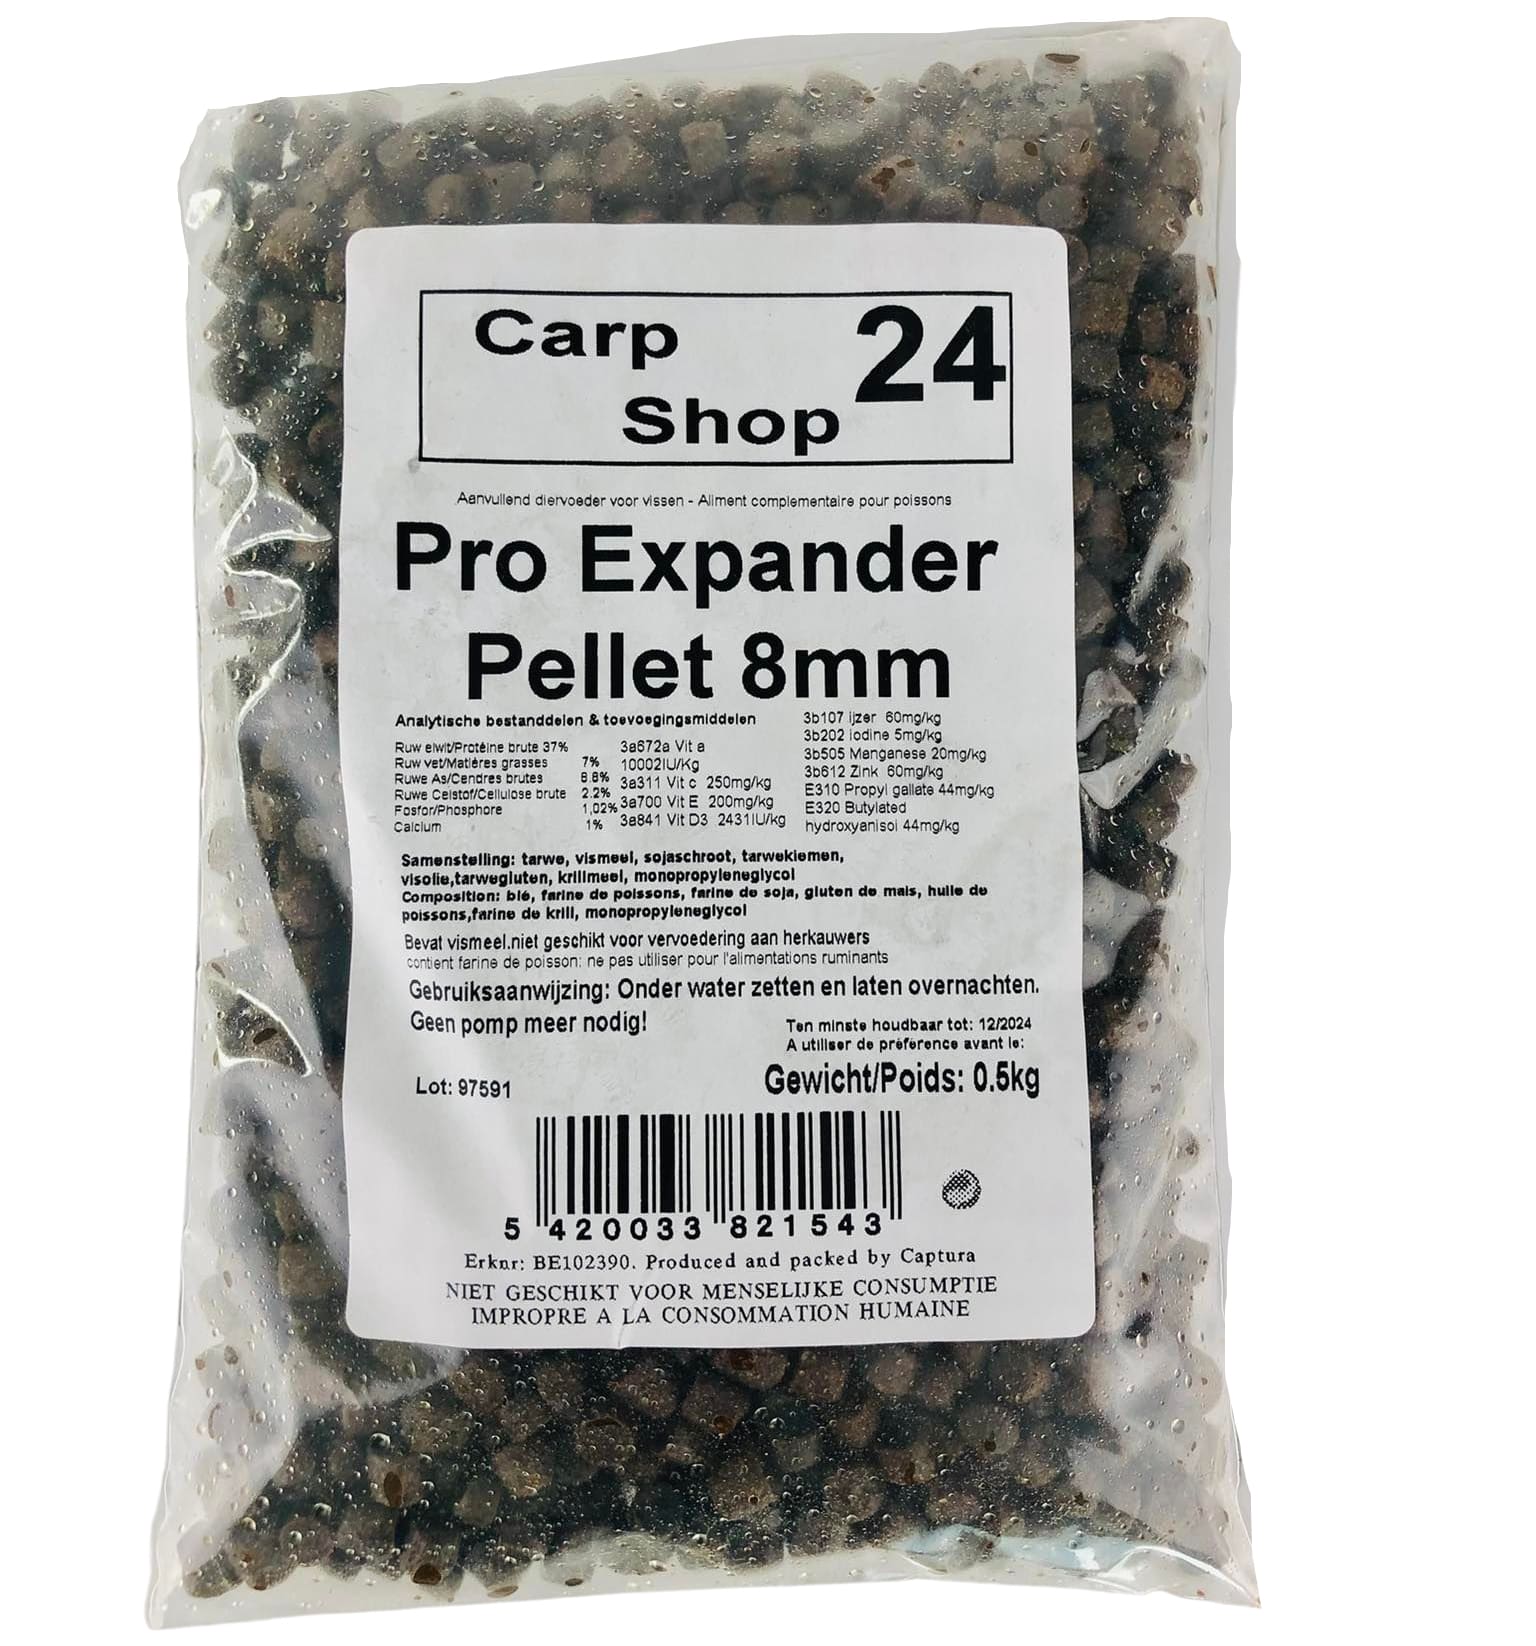 Carpshop24 Pro Expander pellets 8mm